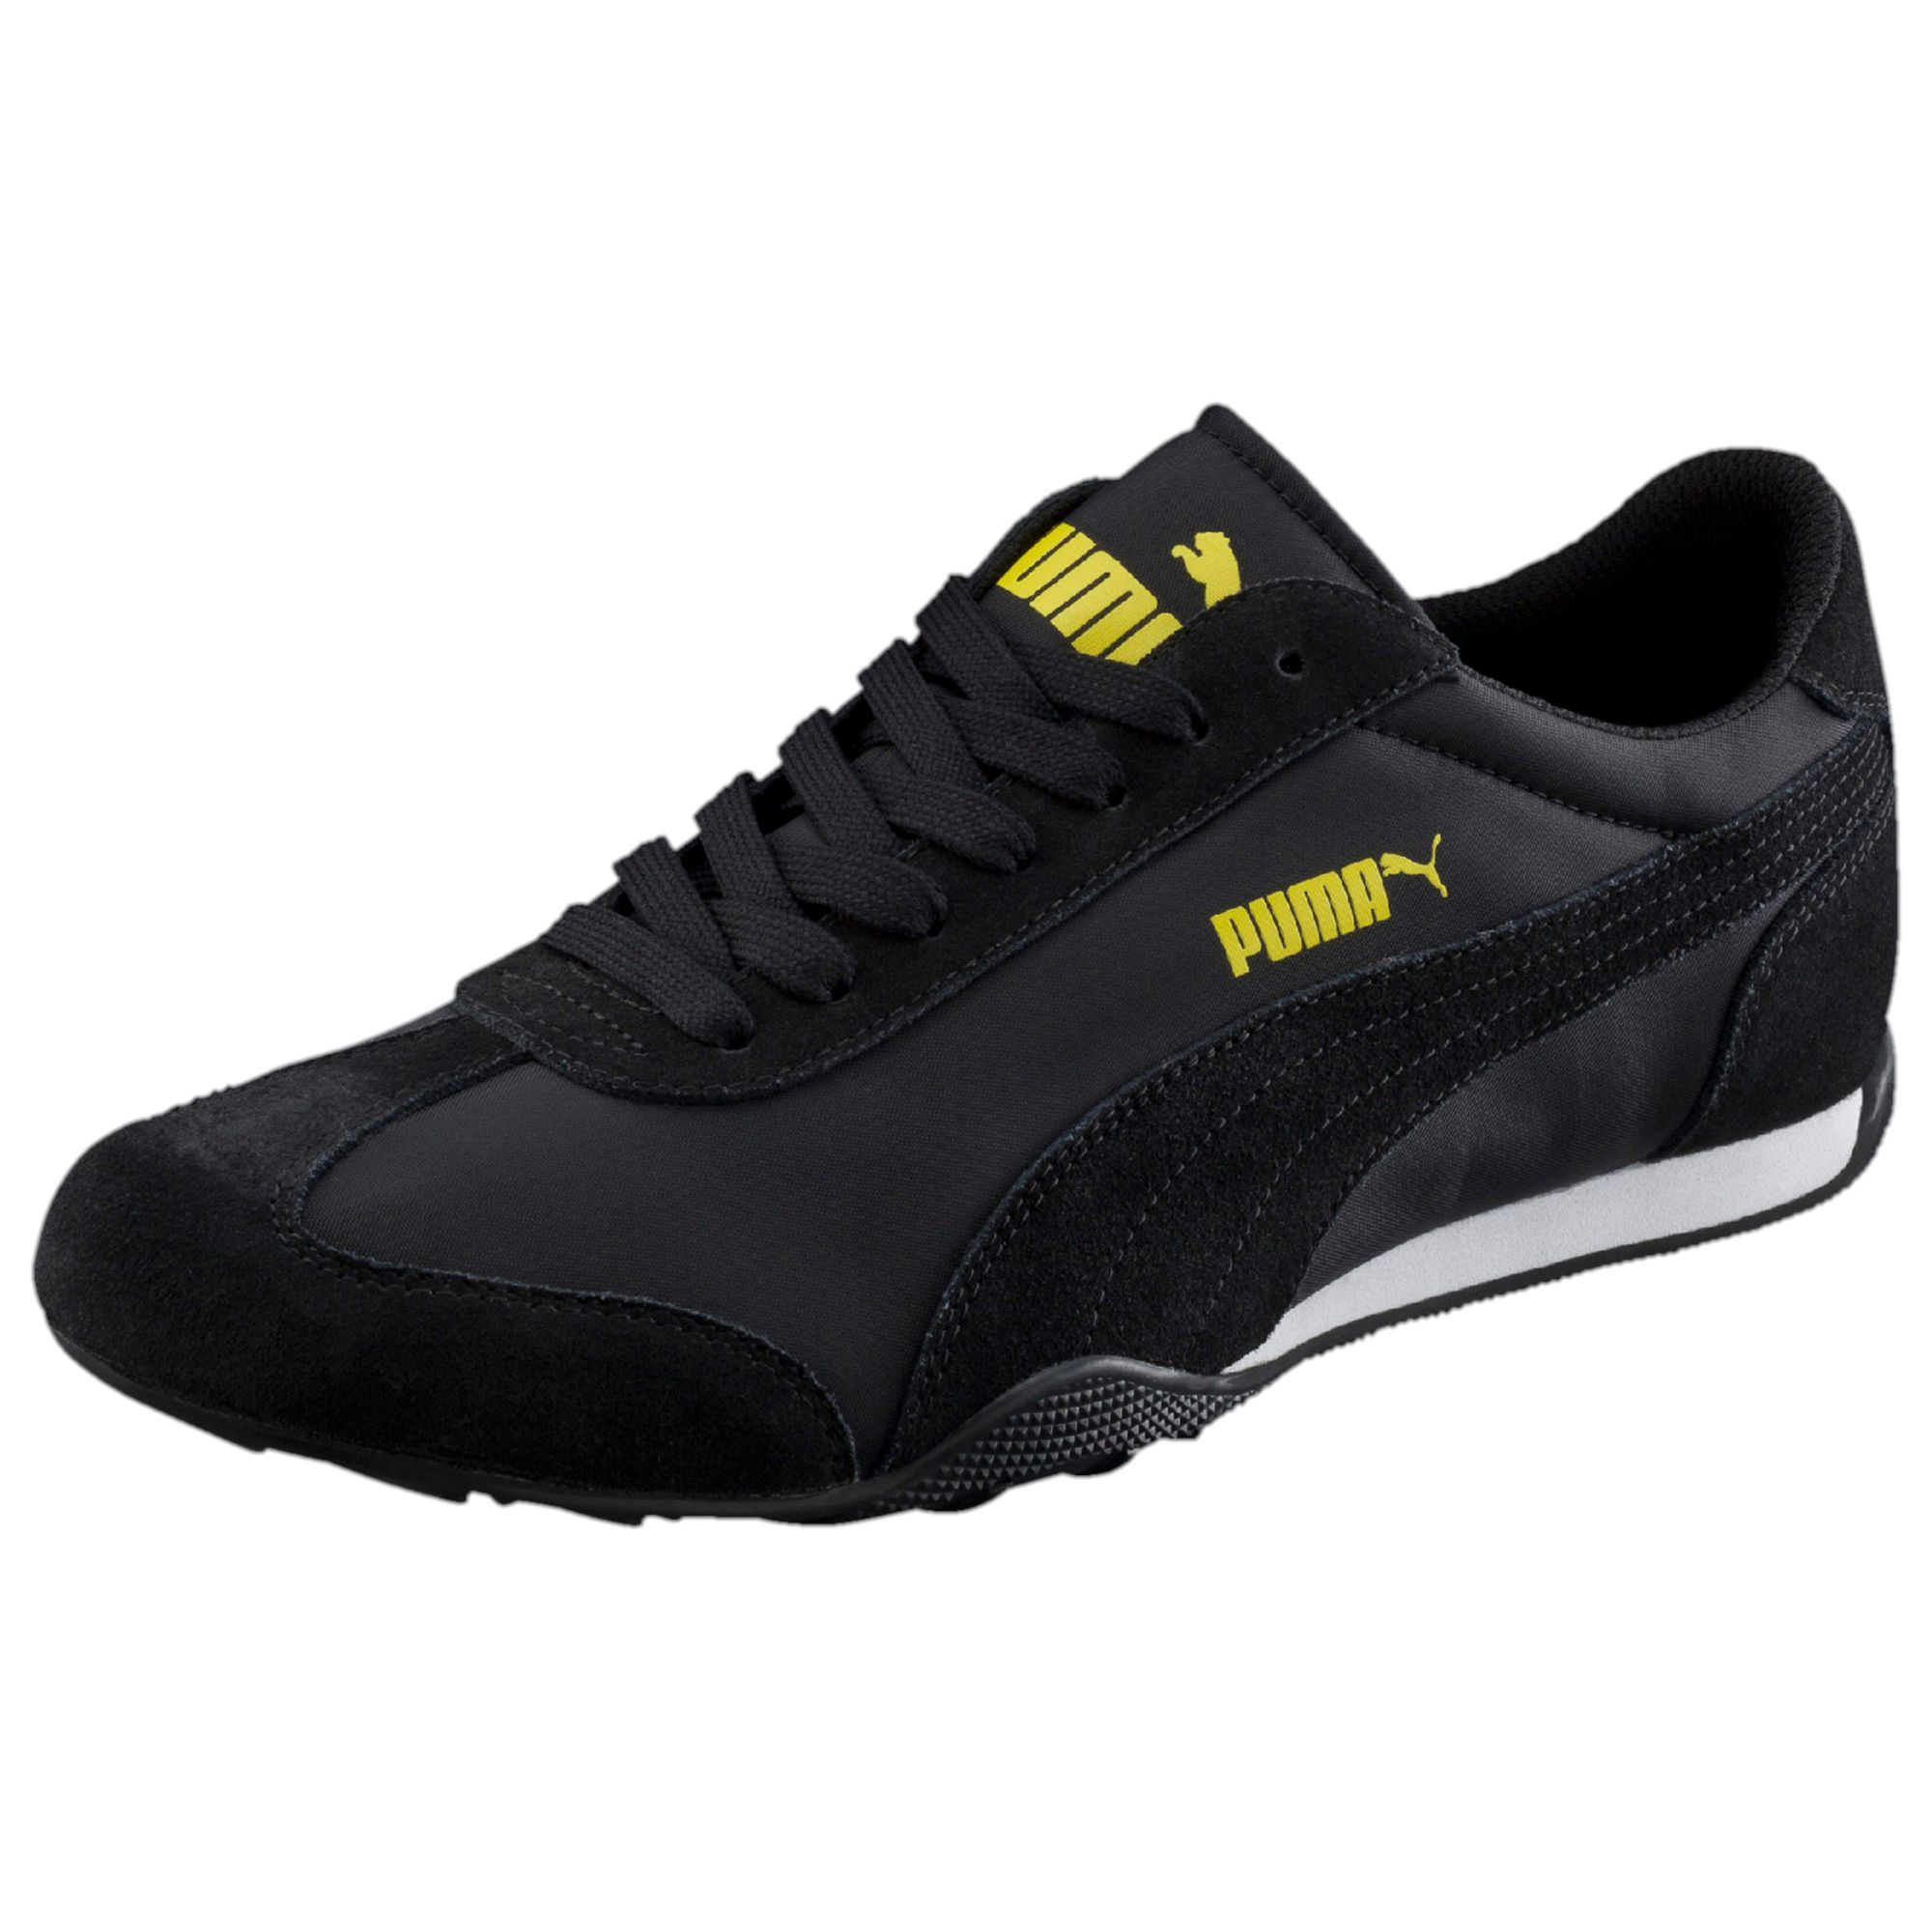 Lyst - Puma 76 Runner Fun Men's Sneakers in Black for Men